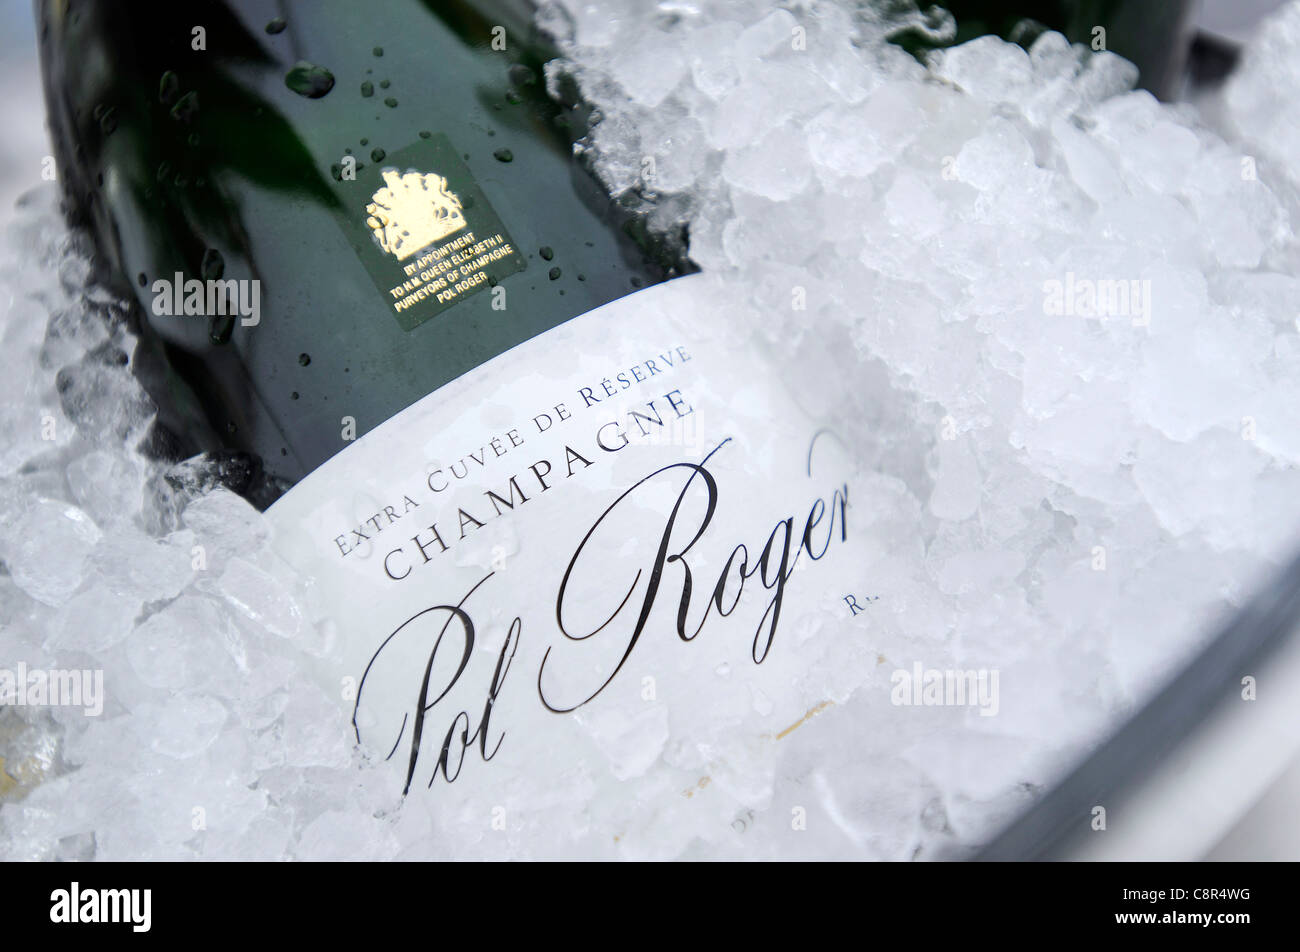 Dettaglio di una bottiglia di Pol Roger champagne raffreddamento in un secchiello per il ghiaccio. Foto Stock